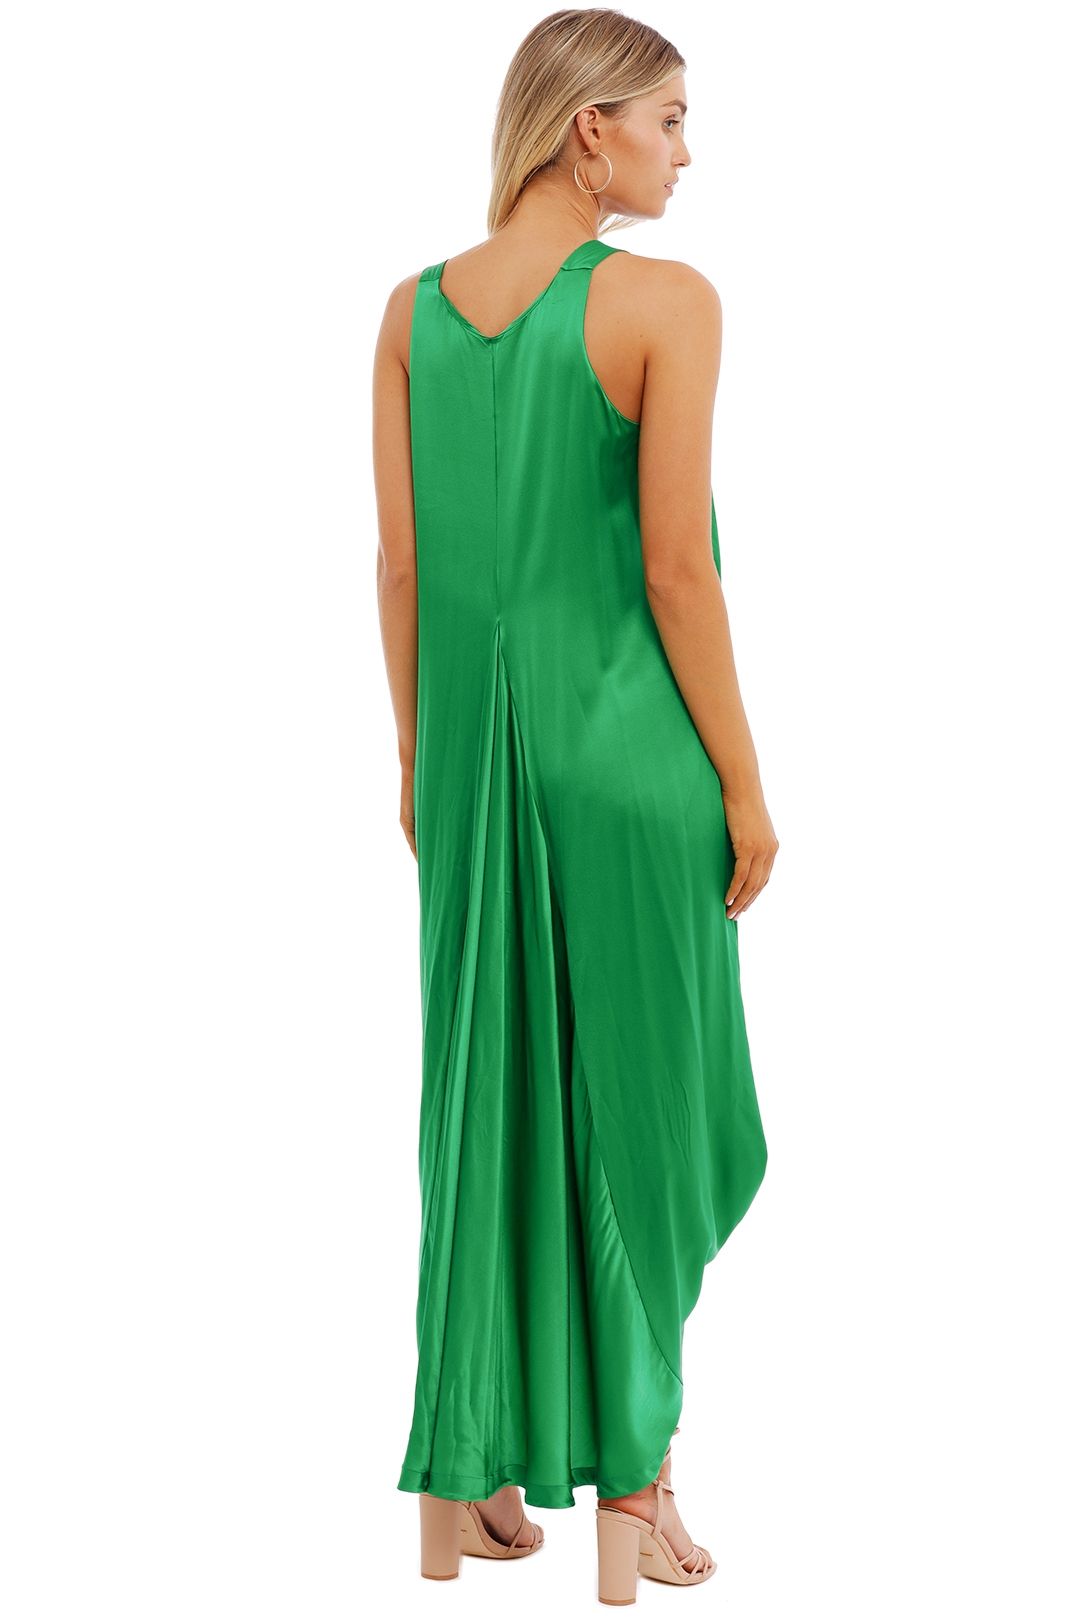 KITX Float Dress Green